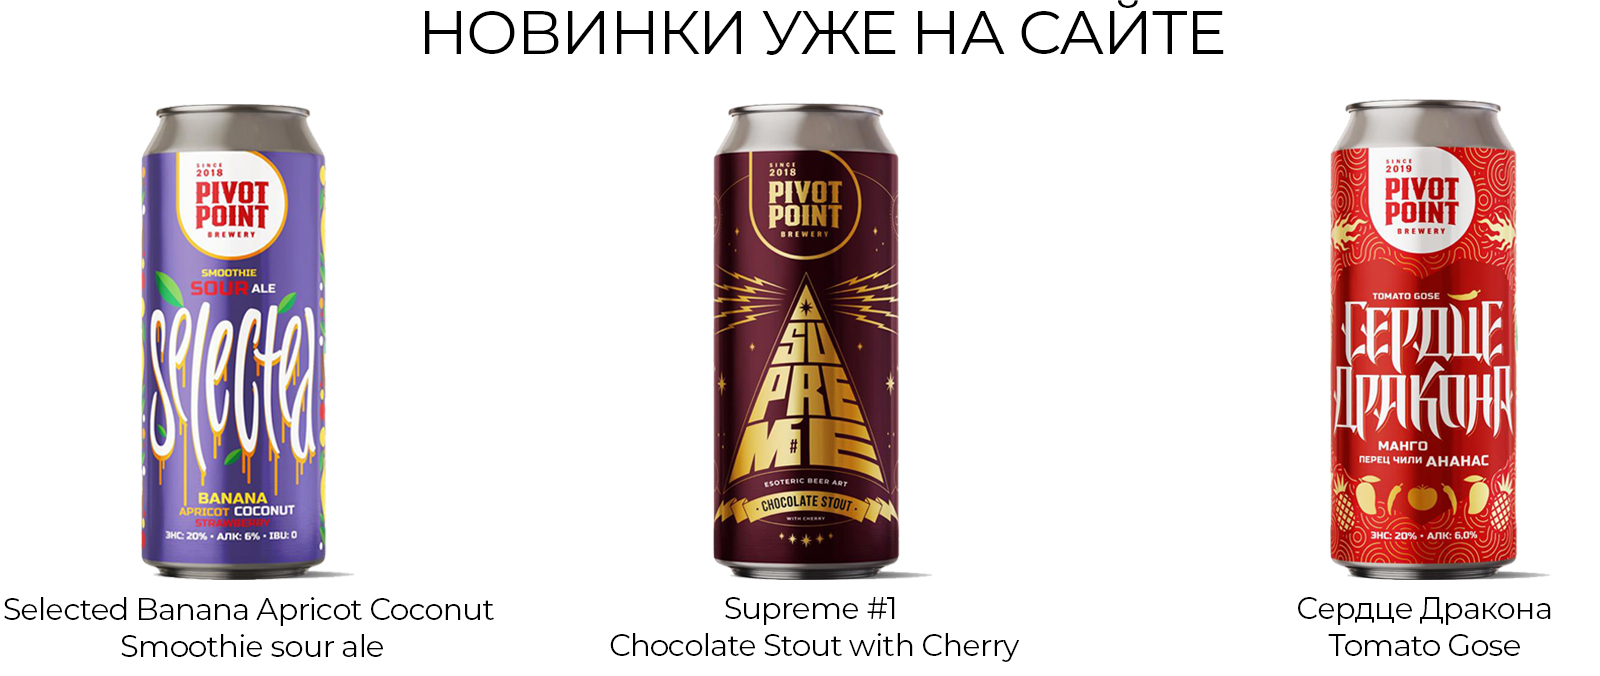 Купить пиво оптом с доставкой в Москве и области у Келлер